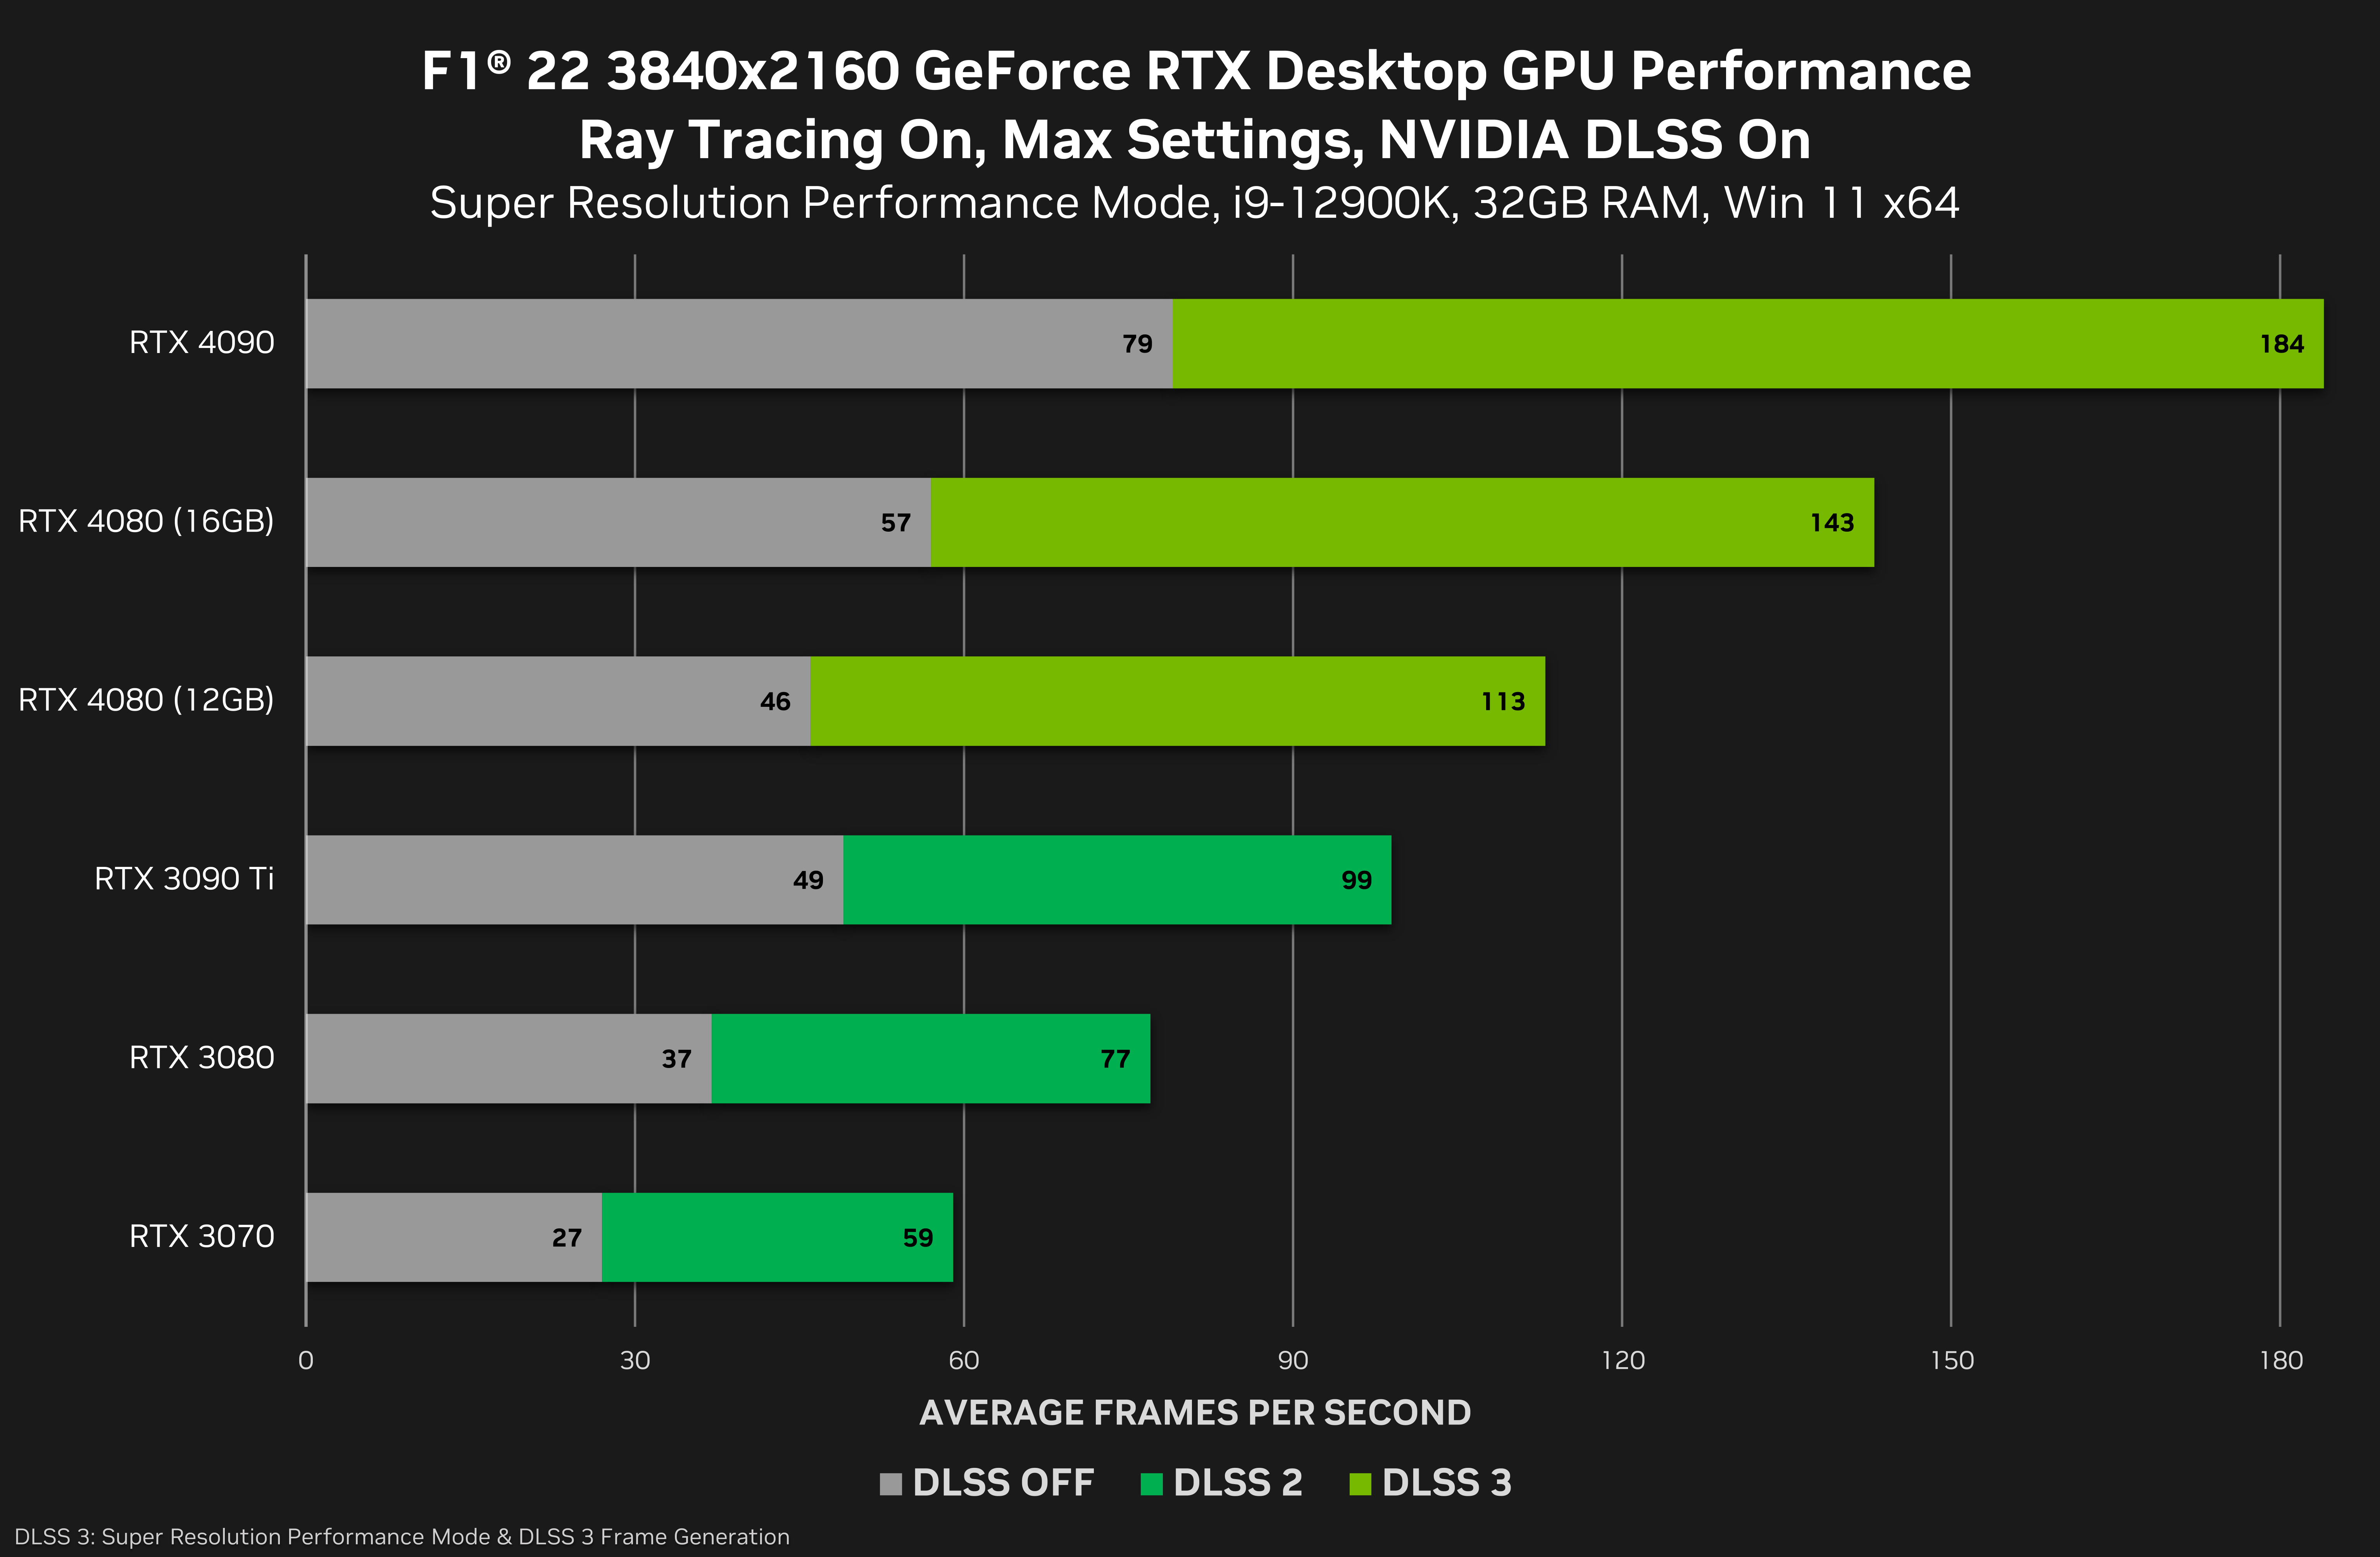 NVIDIA GeForce RTX 4080 16 GB i 12 GB to aż 30% różnicy w FPS